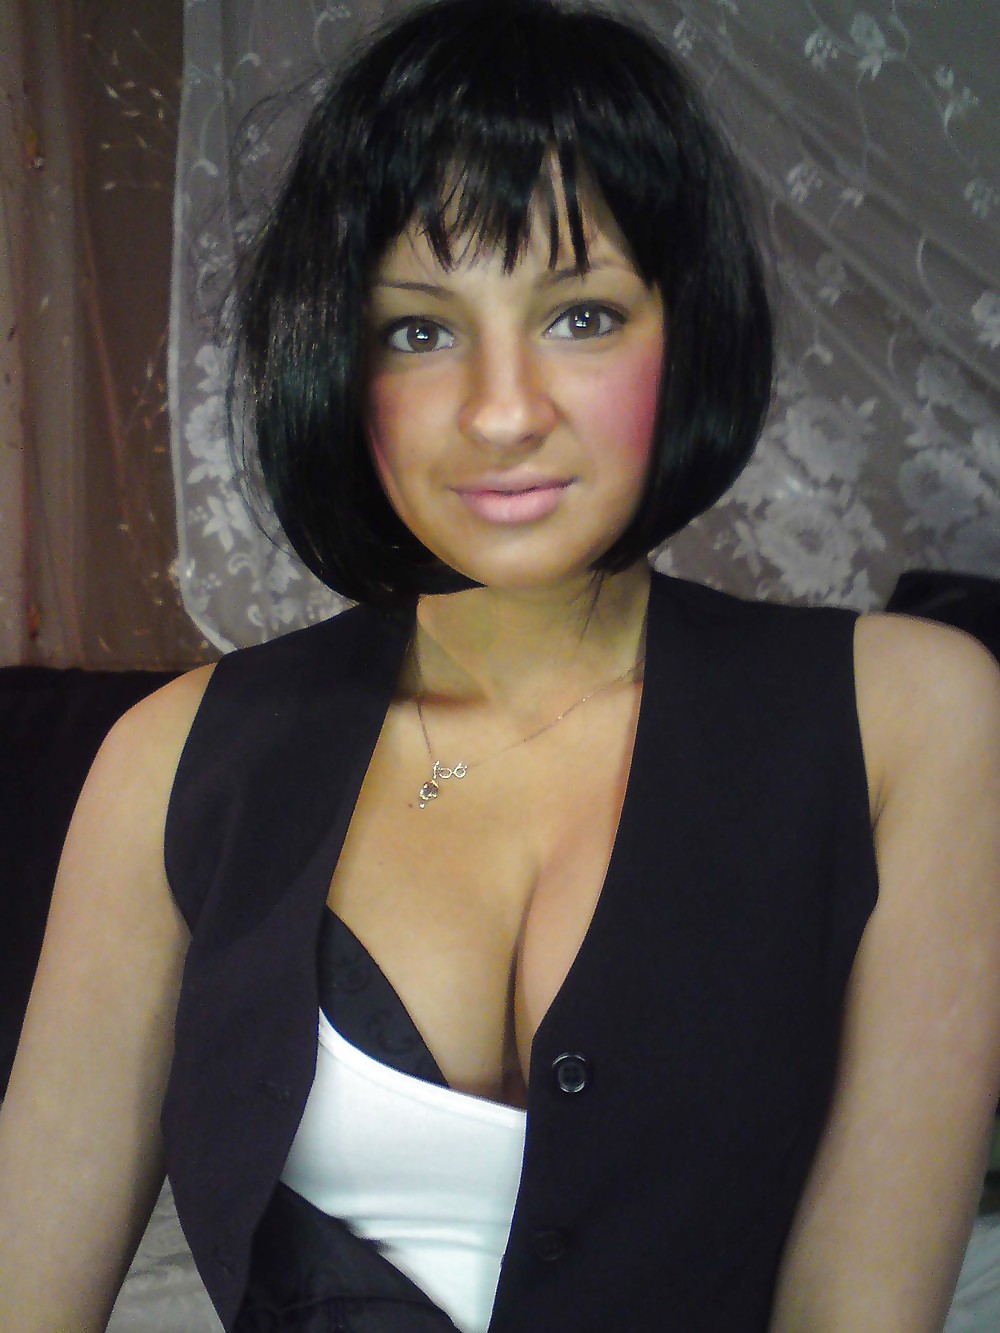 La bellezza di amatoriale russa ex fidanzata
 #11223355